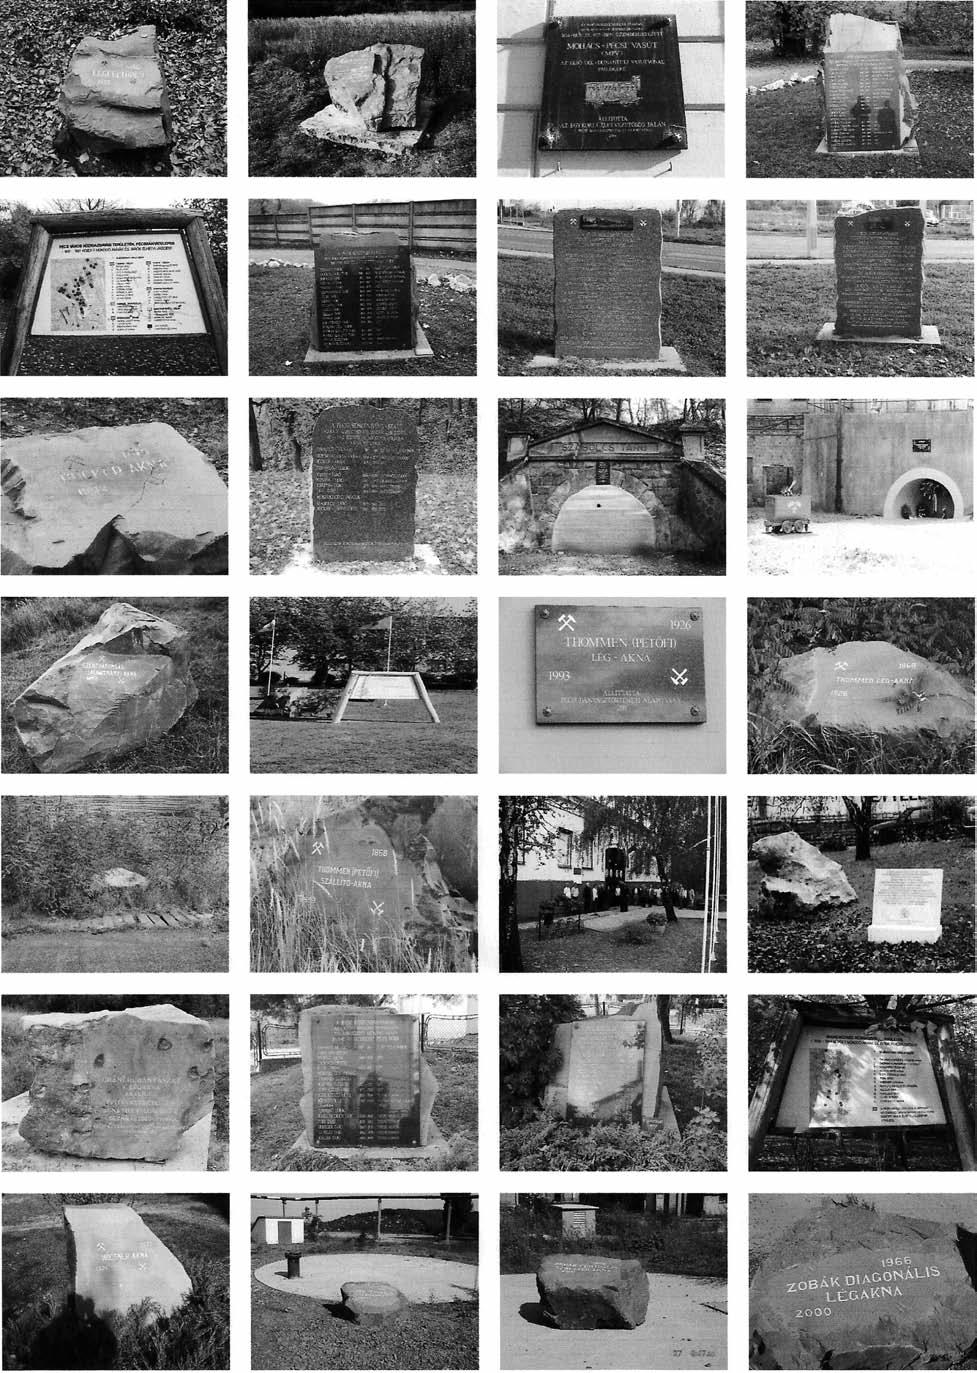 A pécsi kőszénbányászat területén elhelyezett emlékjelekről (emlékkövekről és -táblákról) részletesen Pálfy Attila: Emlékjel, emlékhely típusok